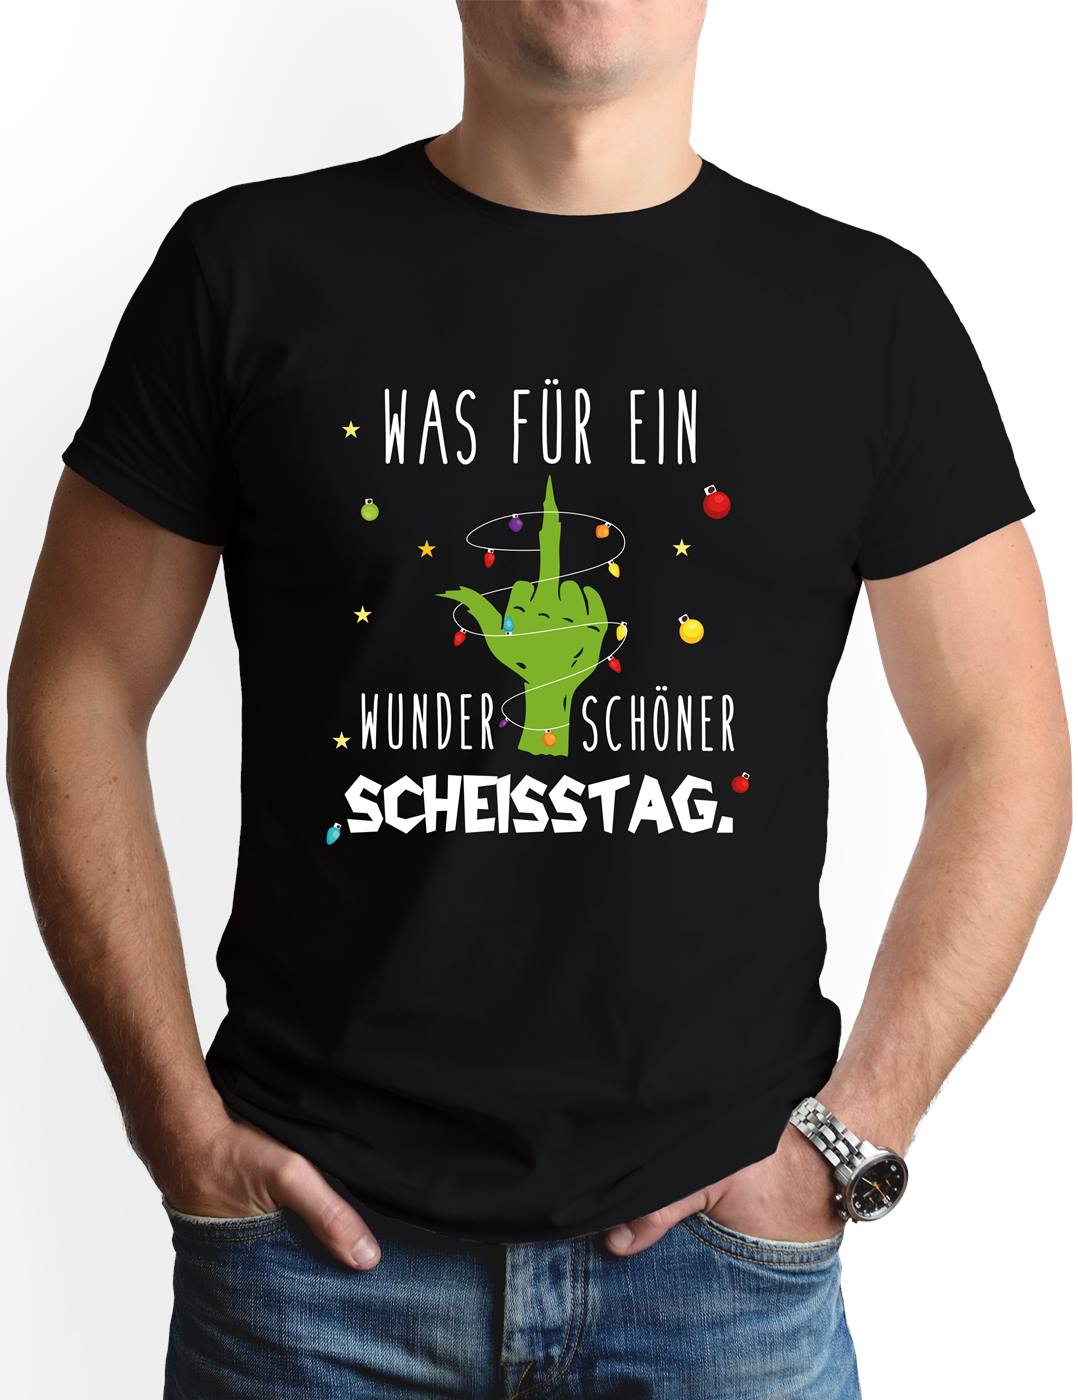 Bild: T-Shirt Herren - Grinch - Was für ein wunderschöner Scheisstag. (Mittelfinger) Geschenkidee